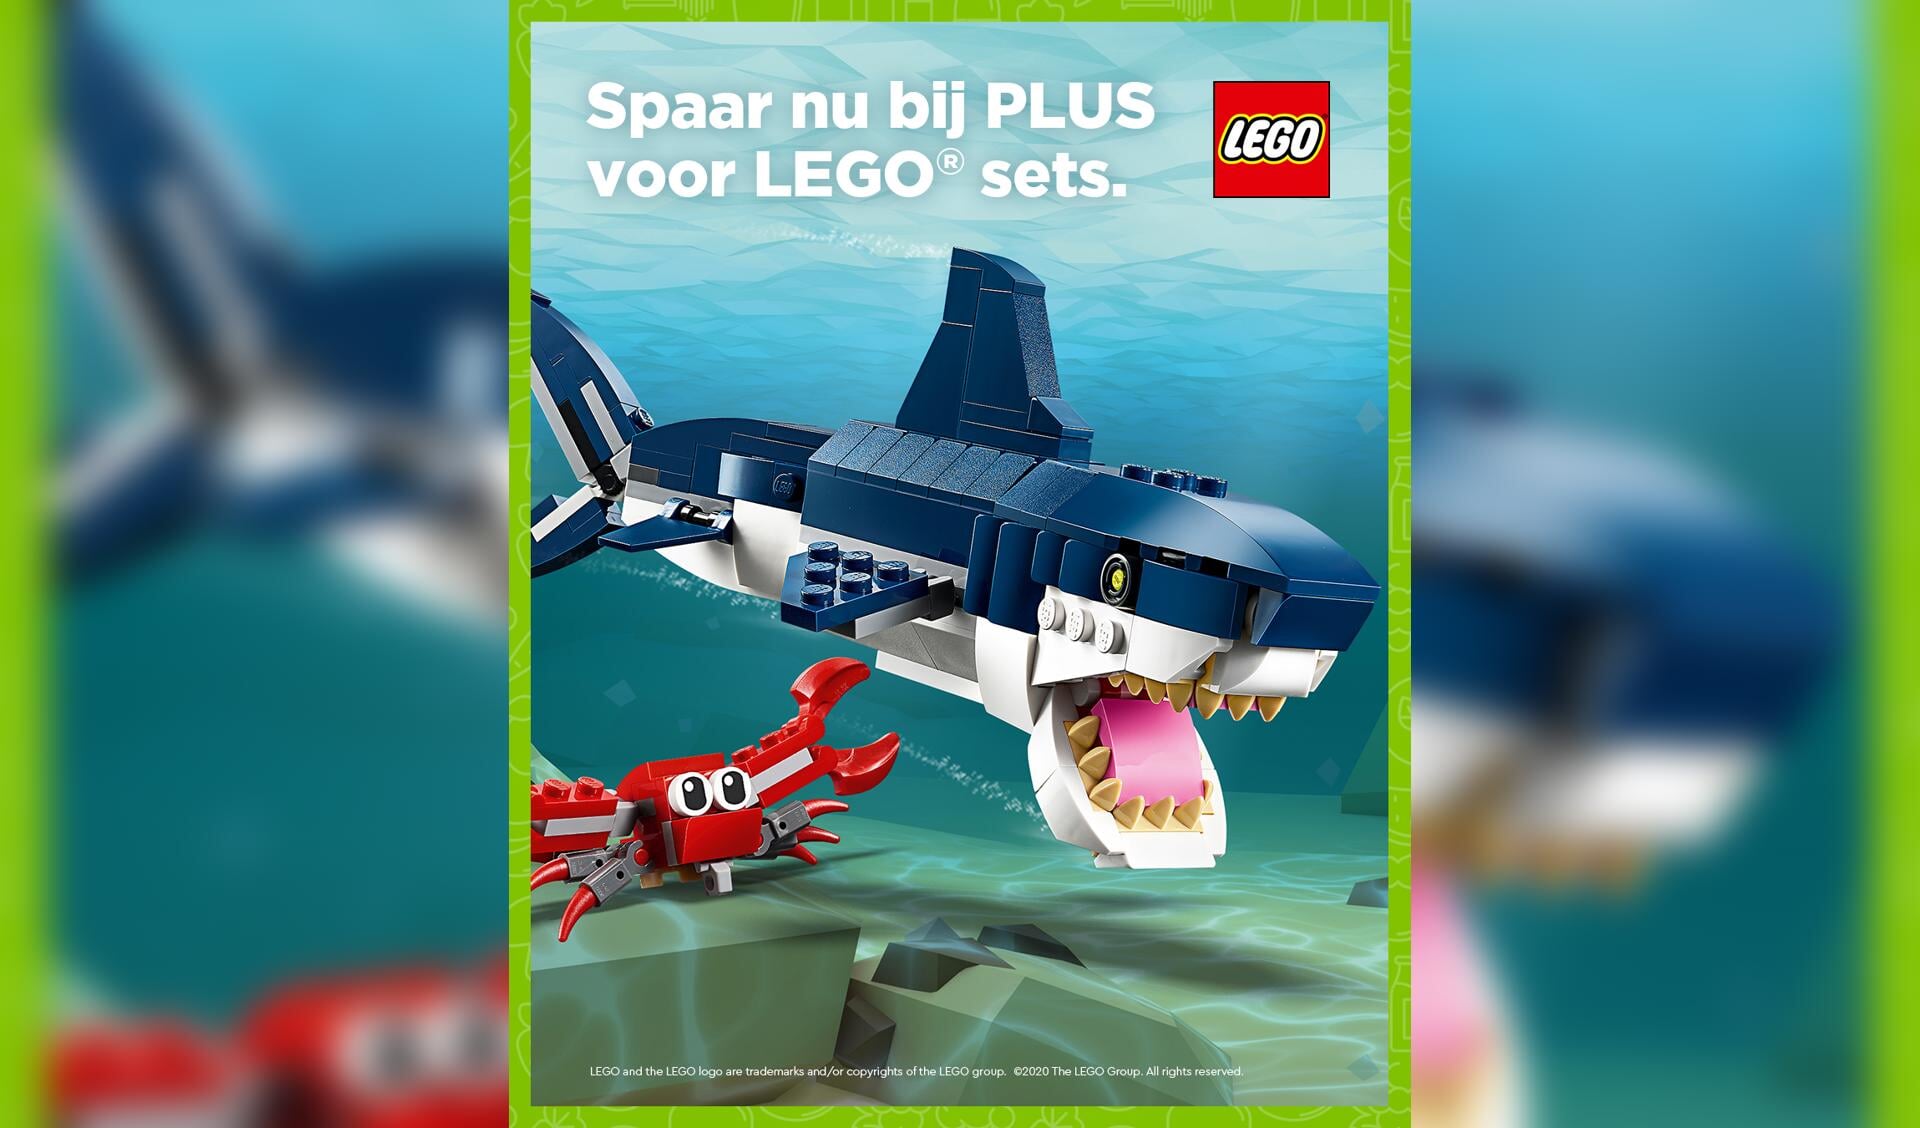 Spaar nu bij PLUS voor LEGO sets!